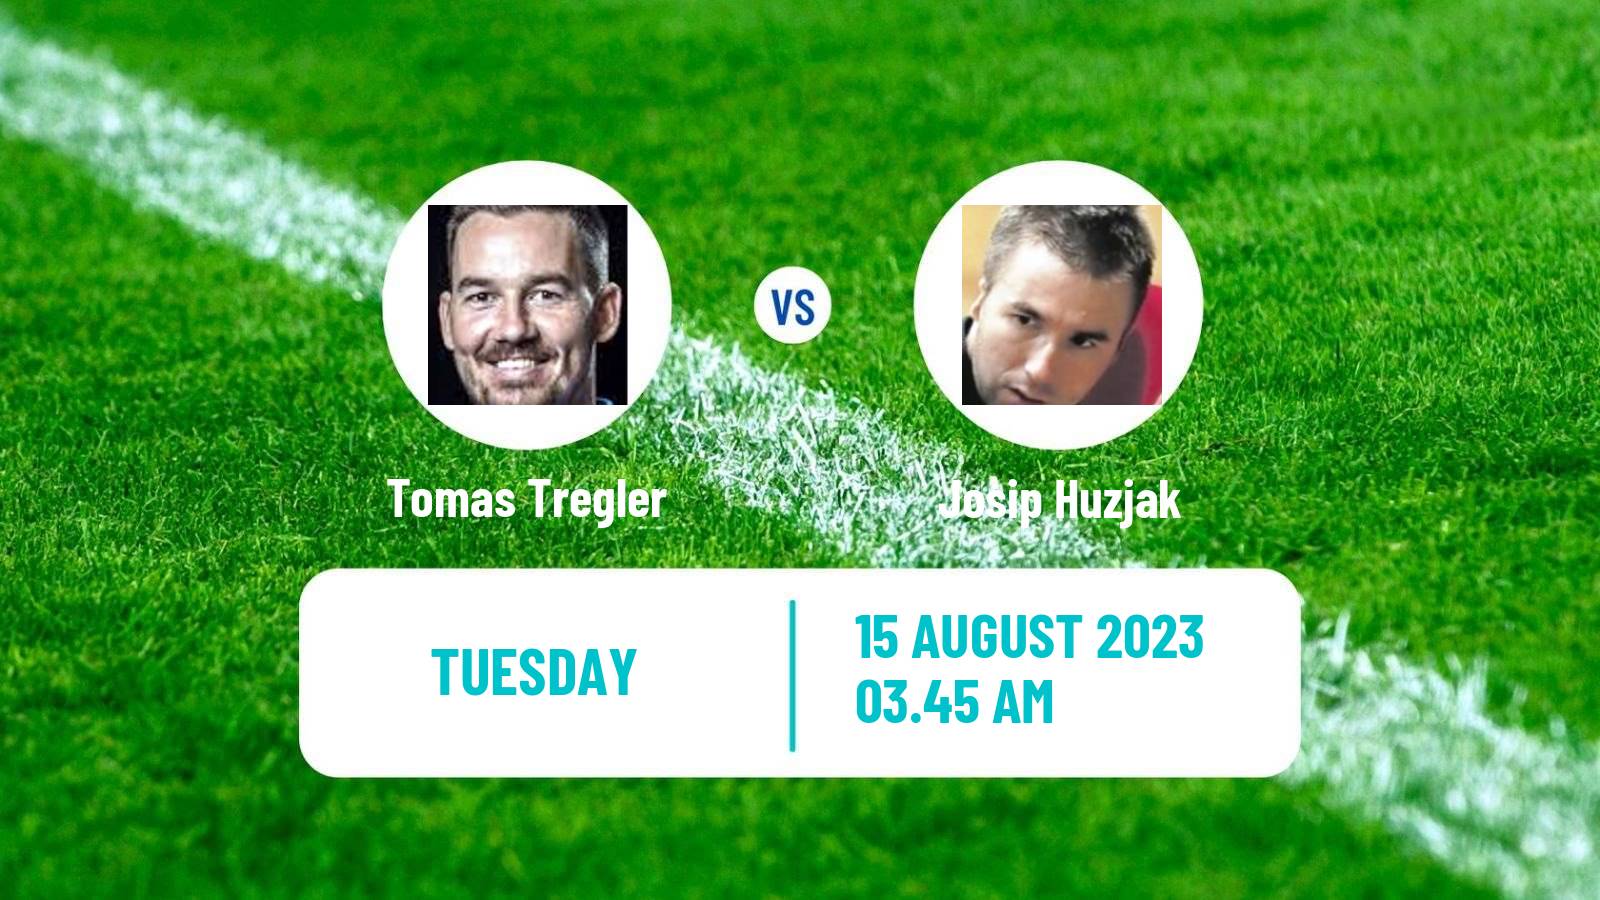 Table tennis Tt Star Series Men Tomas Tregler - Josip Huzjak